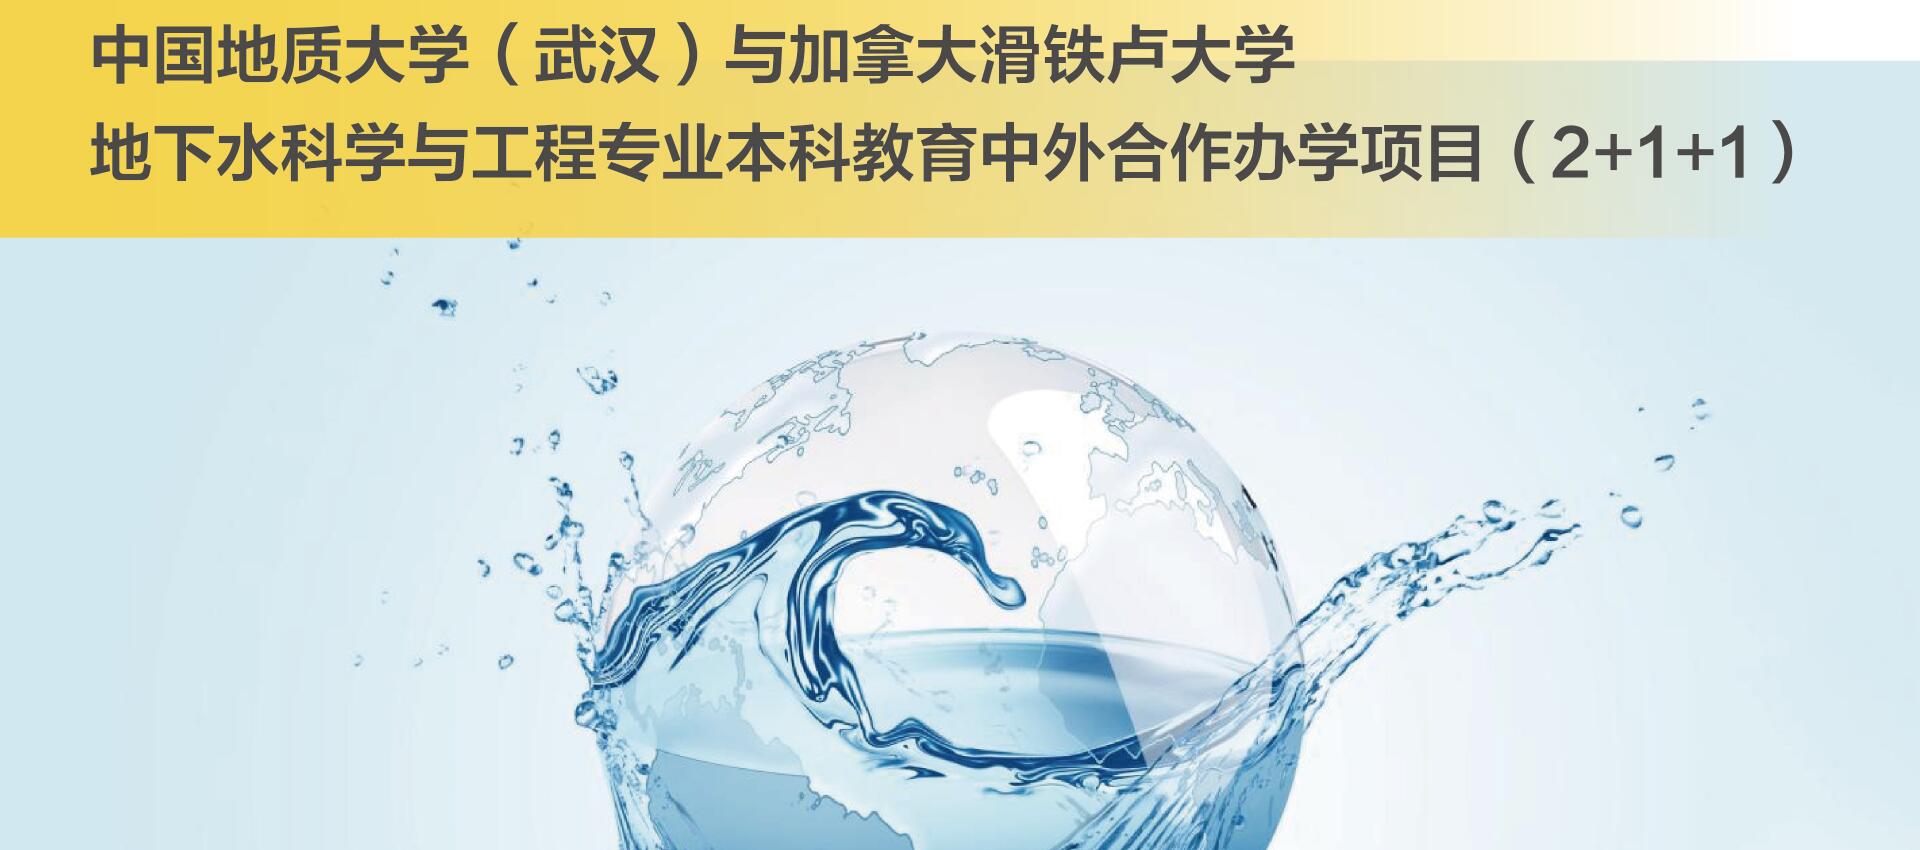 中国地质大学（武汉）与加拿大滑铁卢大学地下水科学与工程专业本科教育项目